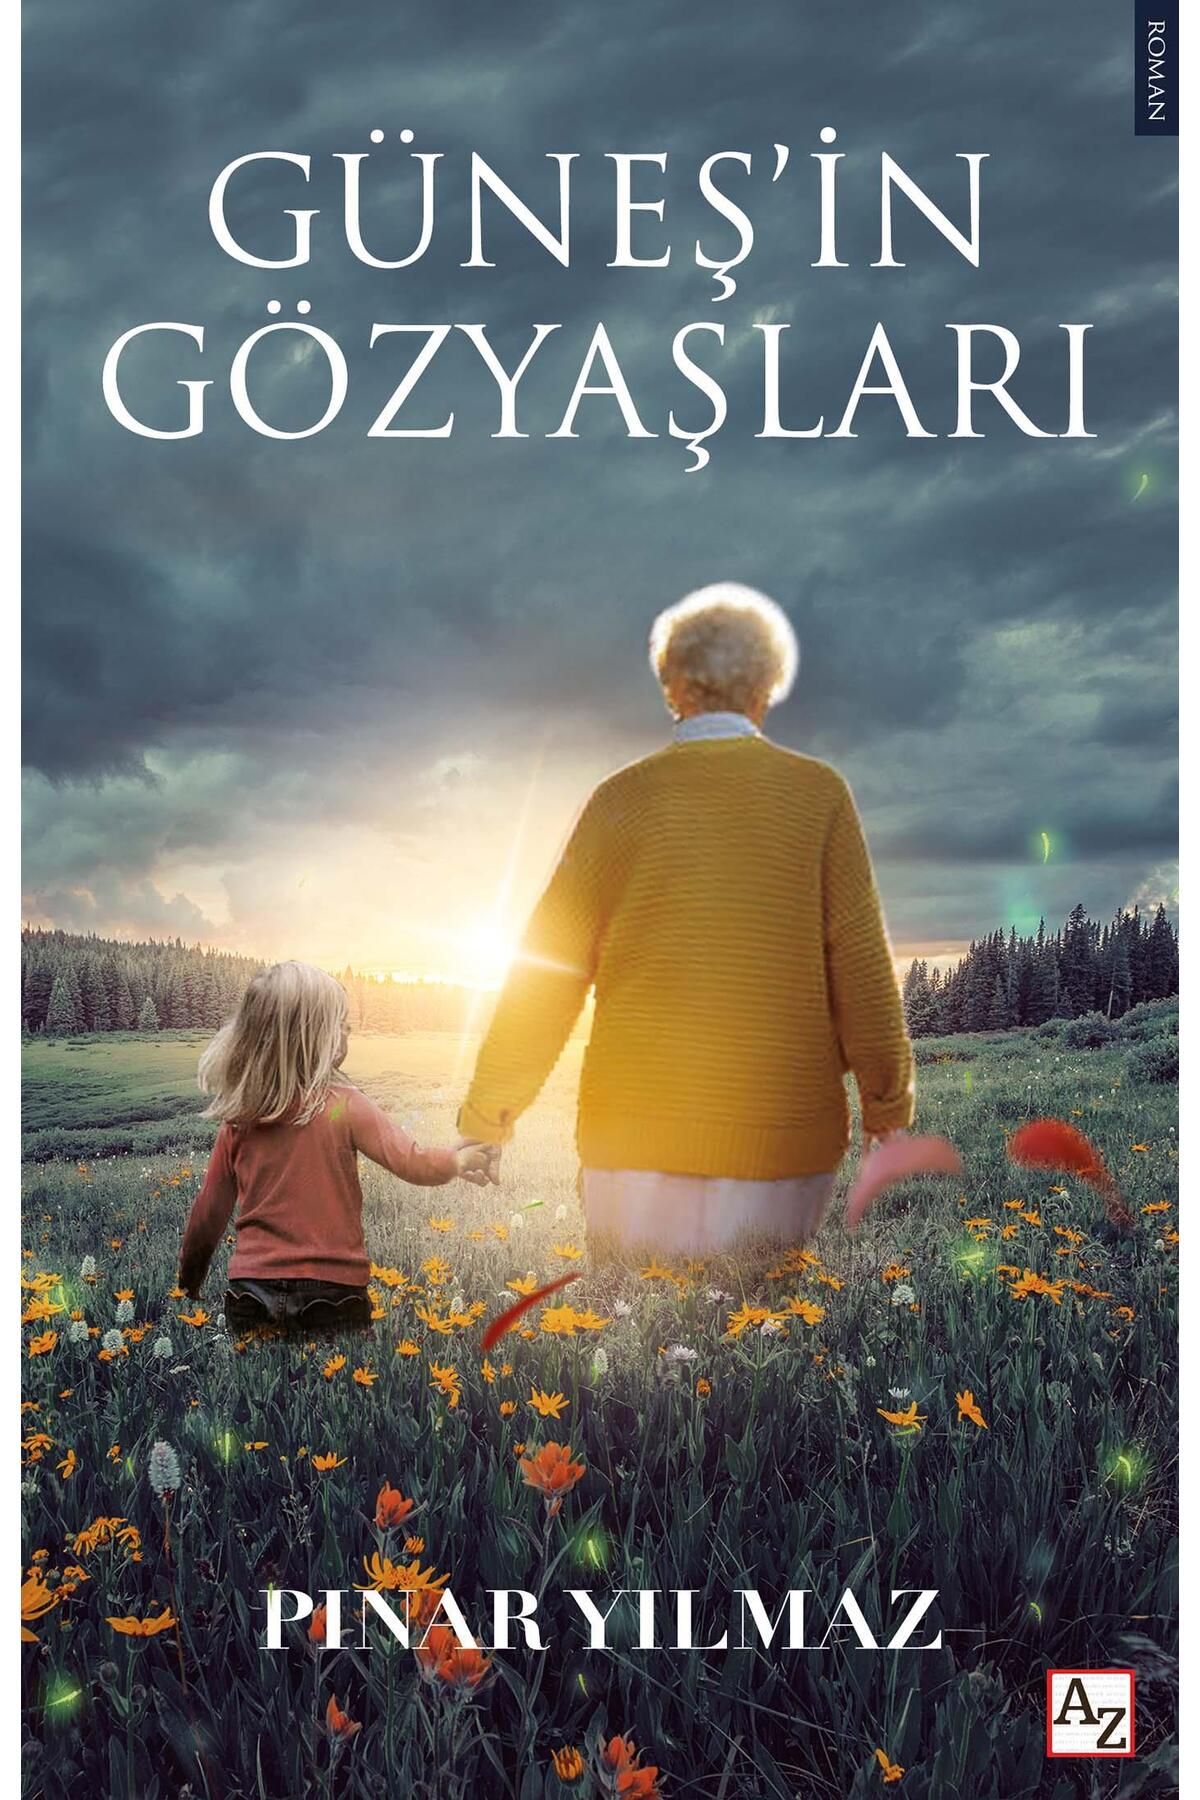 Az Kitap Güneş’in Gözyaşları / Pınar Yılmaz